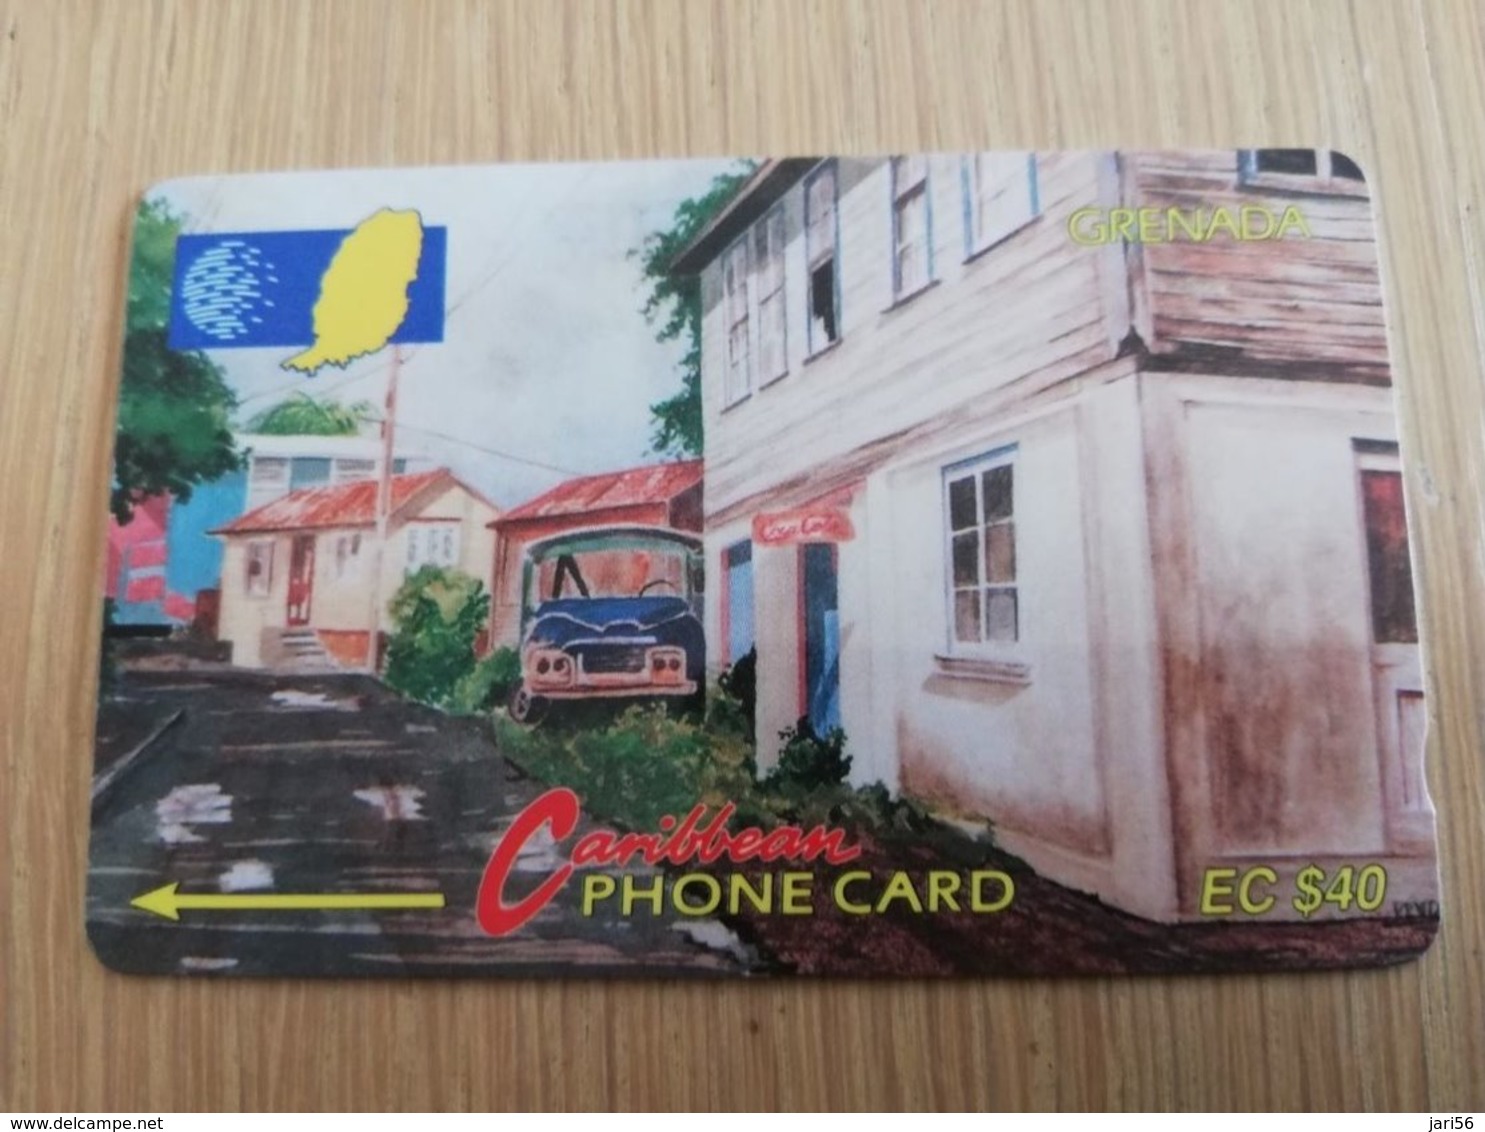 GRENADA  $ 40,- GPT GRE-5C  STREET SCENE GOUVYAVE   MAGNETIC    Fine Used Card    **2235 ** - Grenada (Granada)